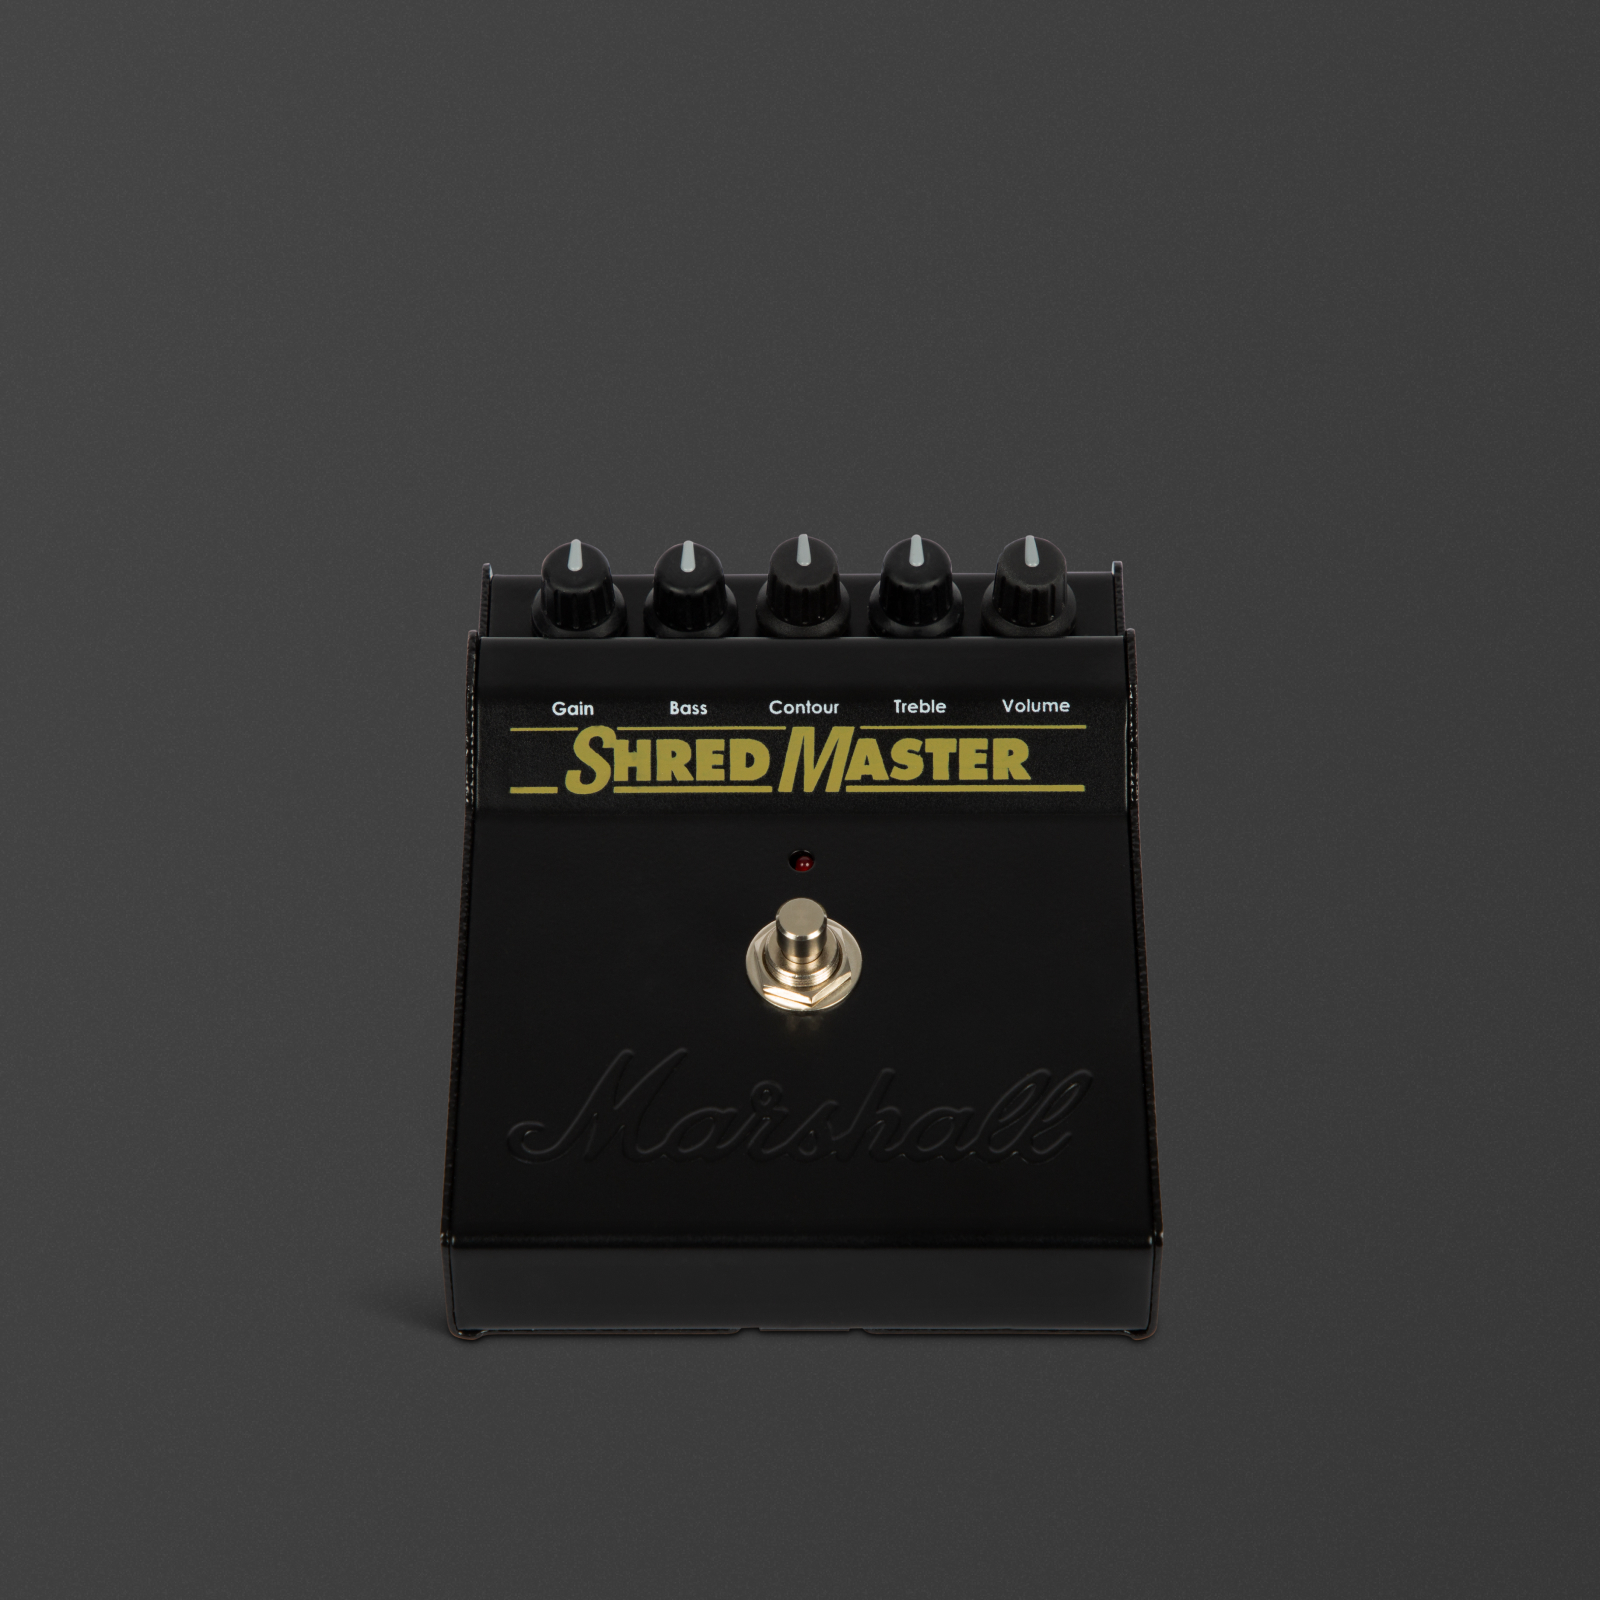 Black Shredmaster Effektpedal, um den kultigen Sound des Originals nachzubilden.